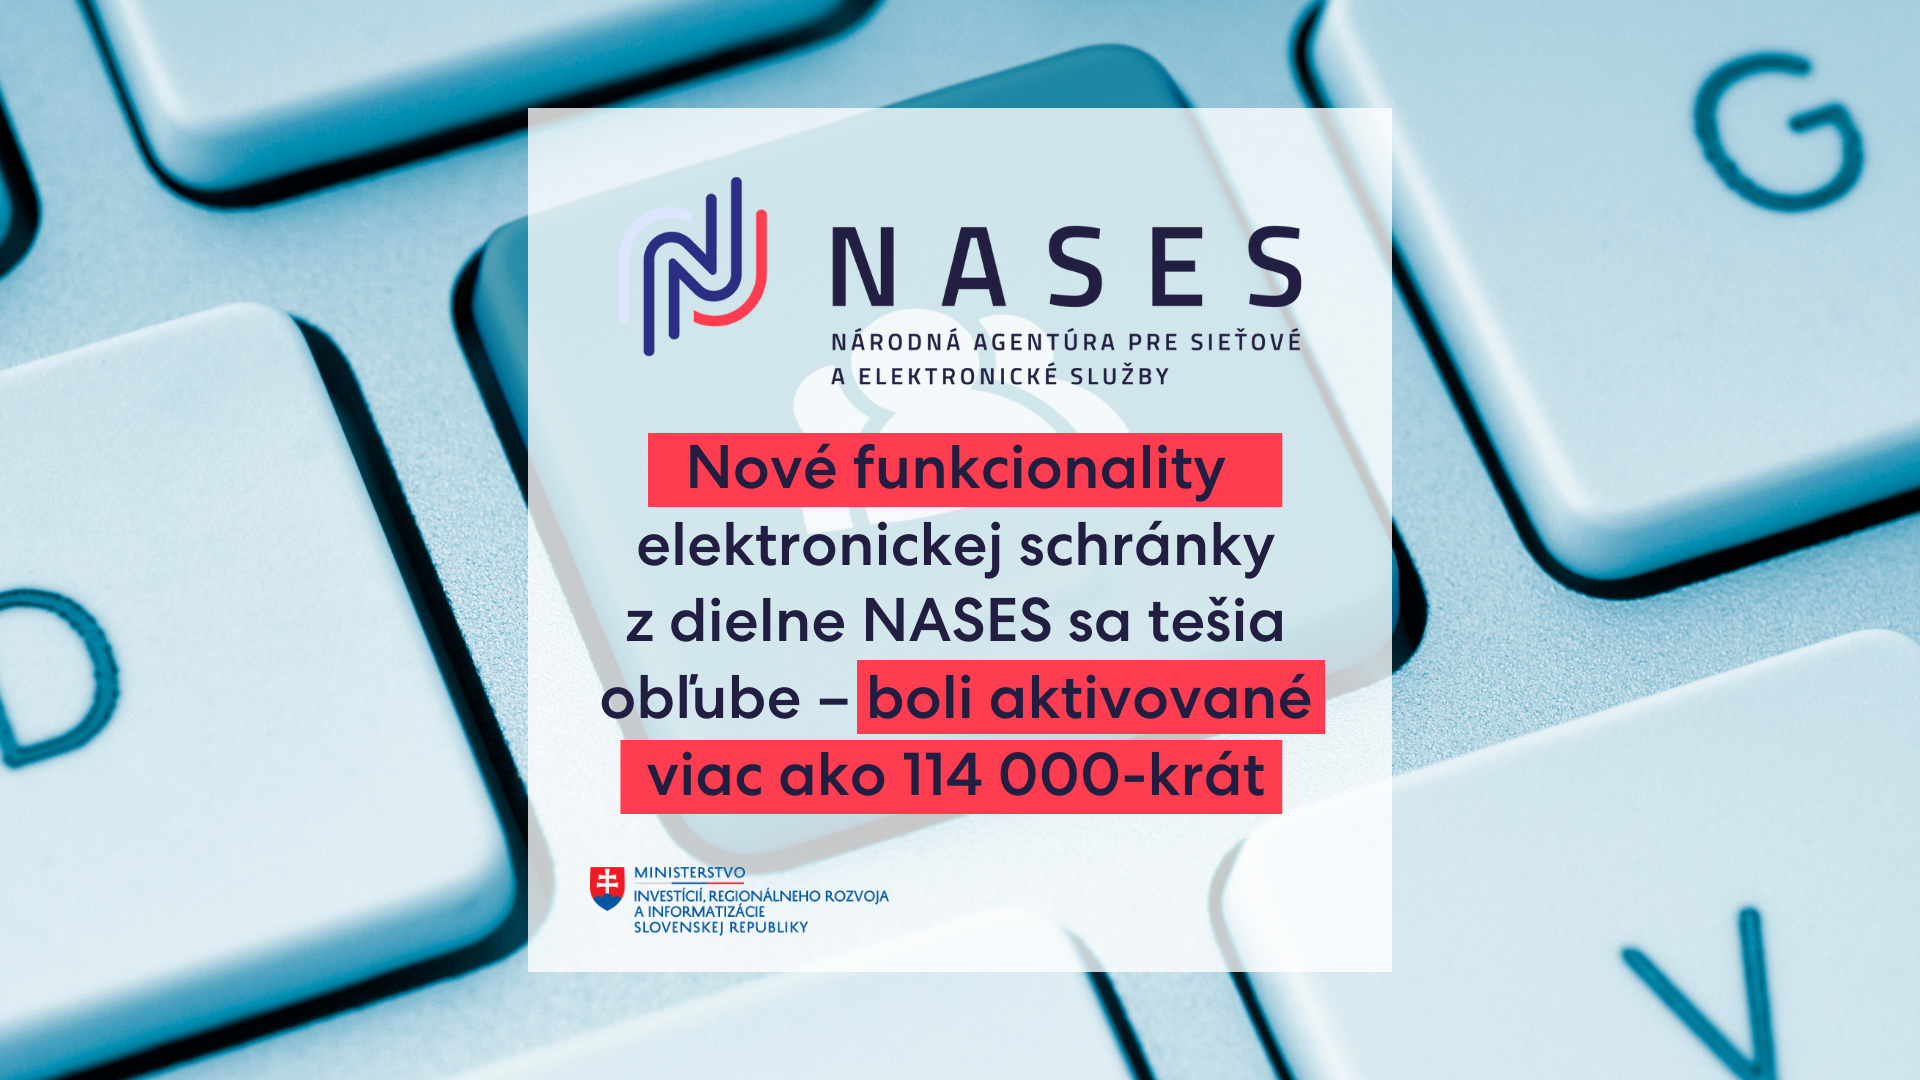 Nové funkcionality elektronickej schránky z dielne NASES sa tešia obľube – boli aktivované viac ako 114 000-krát